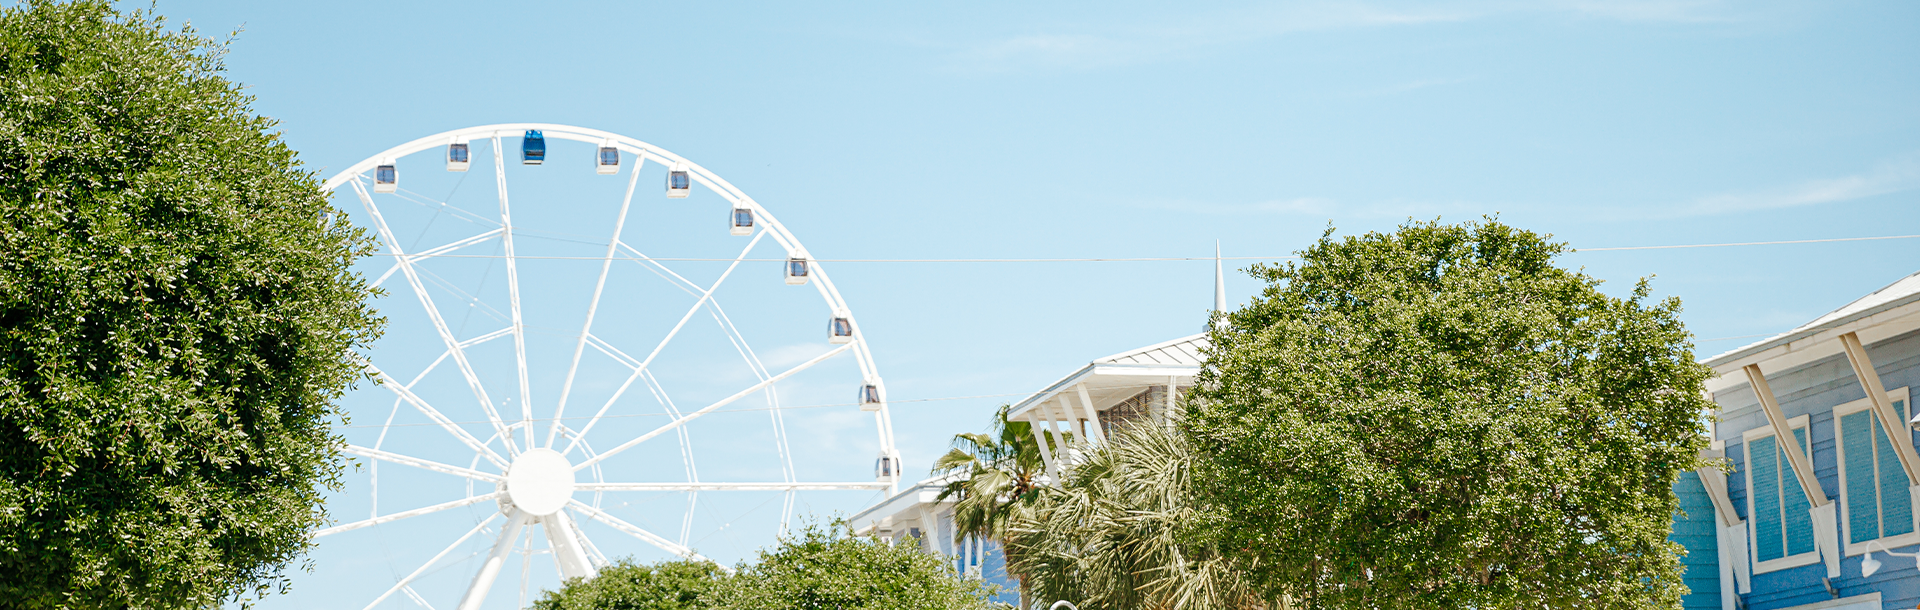 Ferris Wheel in Pier Park. 